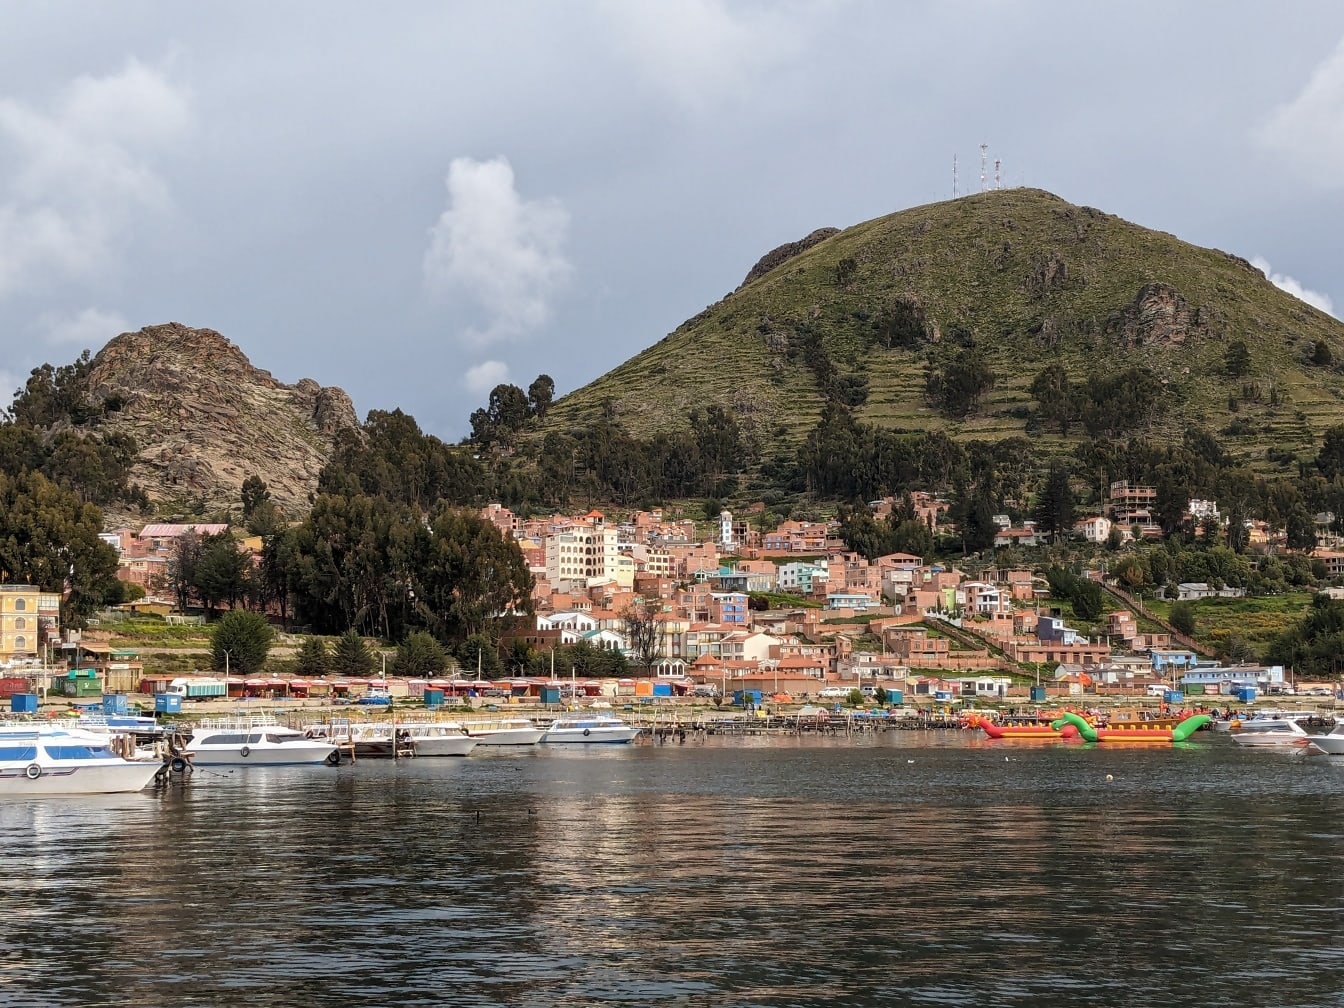 Panorama turystycznego miasta Copacabana nad jeziorem Titicaca w Boliwii